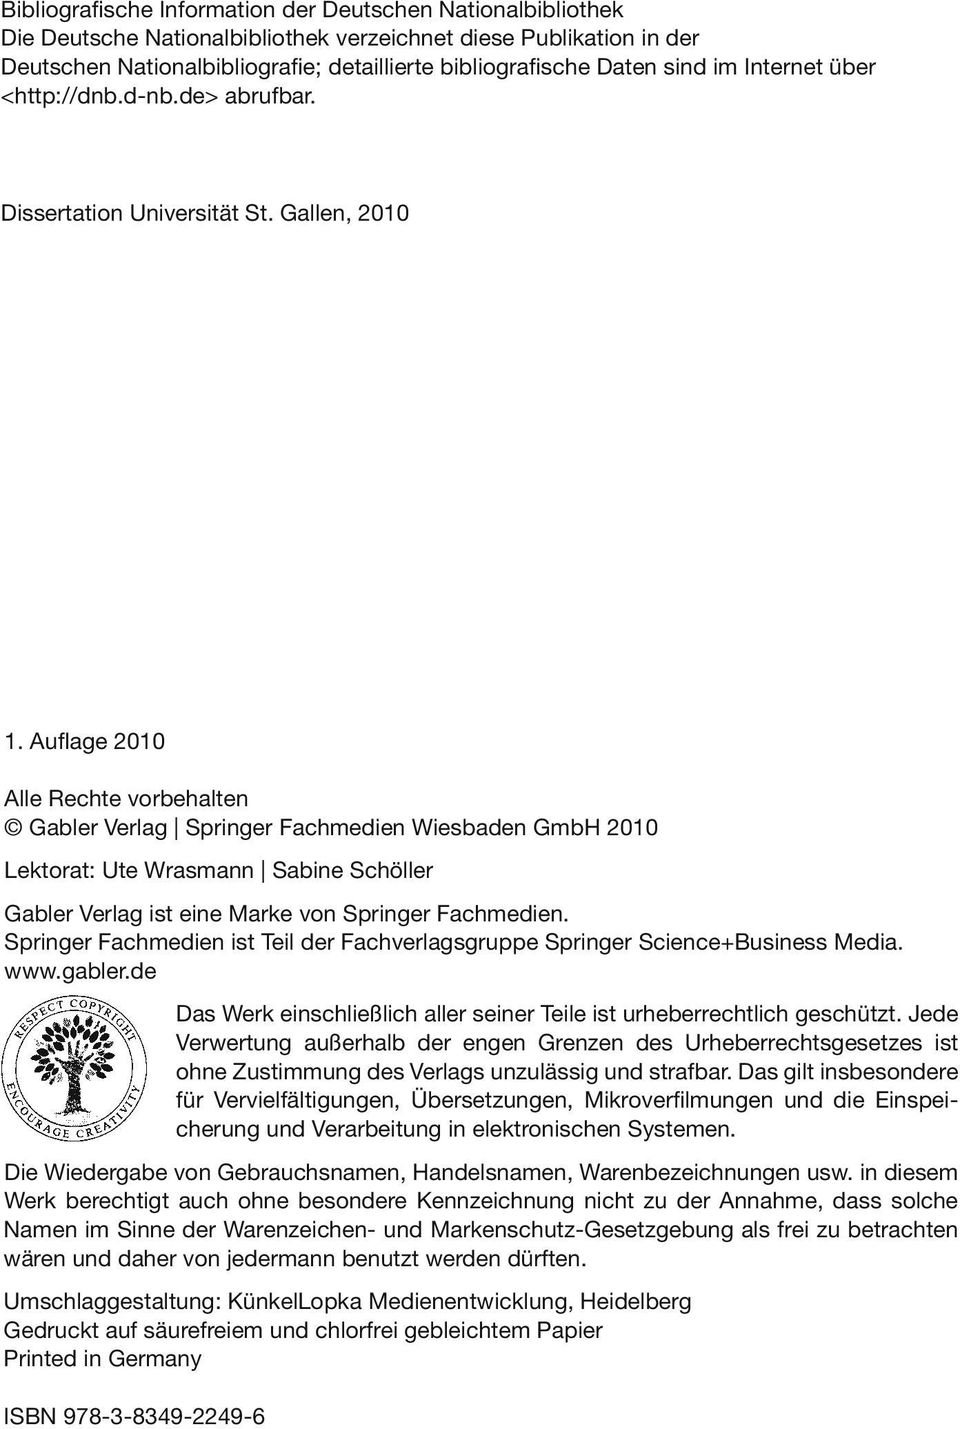 Auflage 2010 Alle Rechte vorbehalten Gabler Verlag Springer Fachmedien Wiesbaden GmbH 2010 Lektorat: Ute Wrasmann Sabine Schöller Gabler Verlag ist eine Marke von Springer Fachmedien.